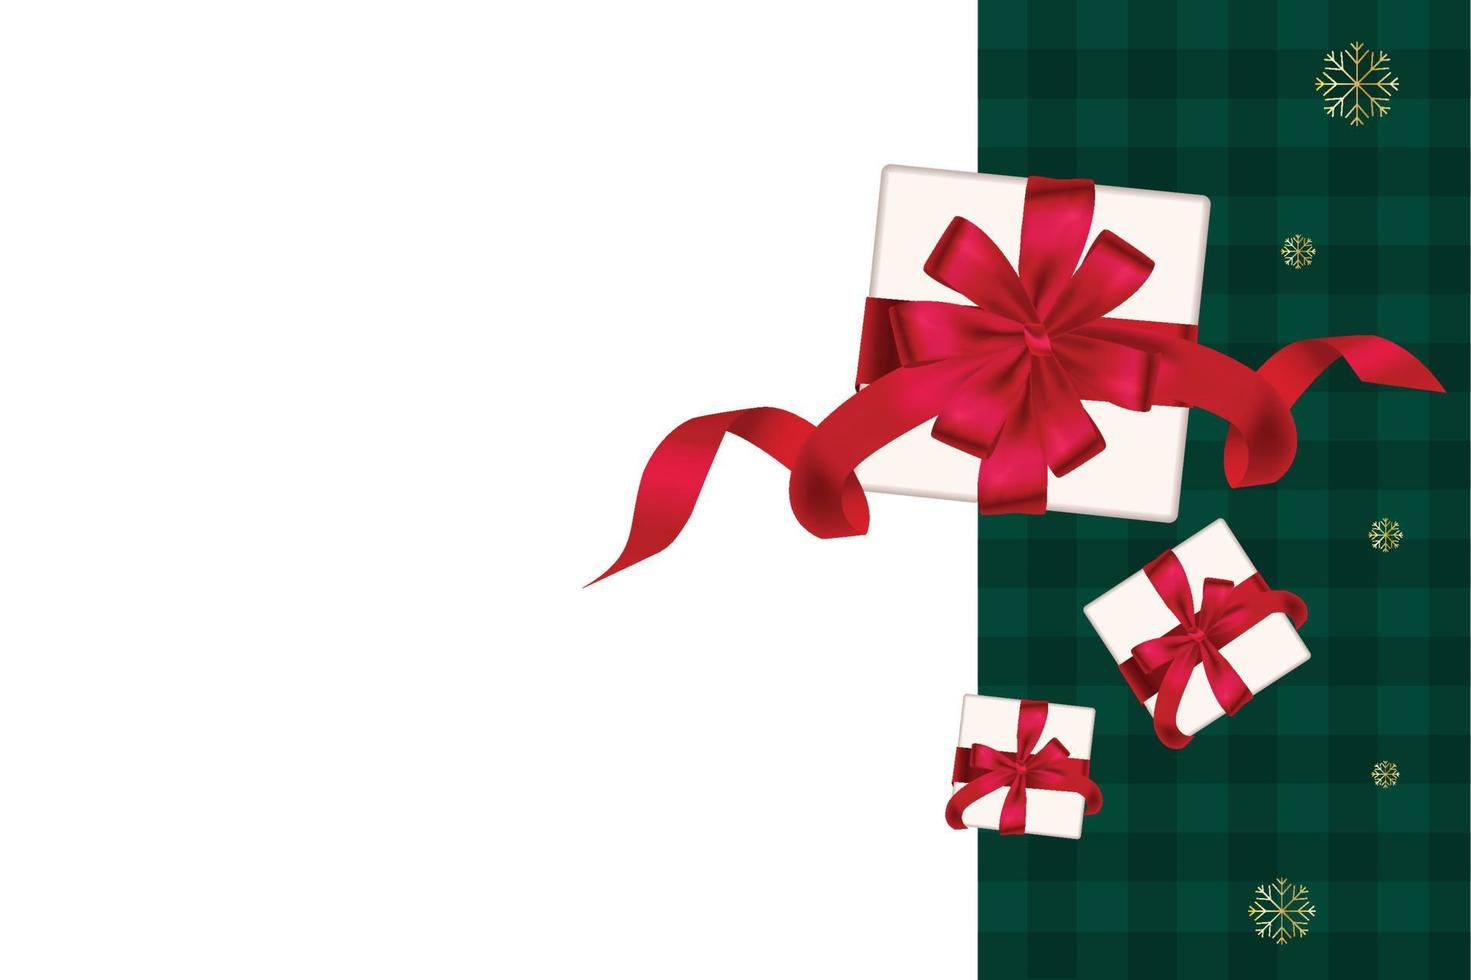 caixa de presente decorativa com laço vermelho. fundo xadrez verde, ano novo natal, ilustração vetorial vetor